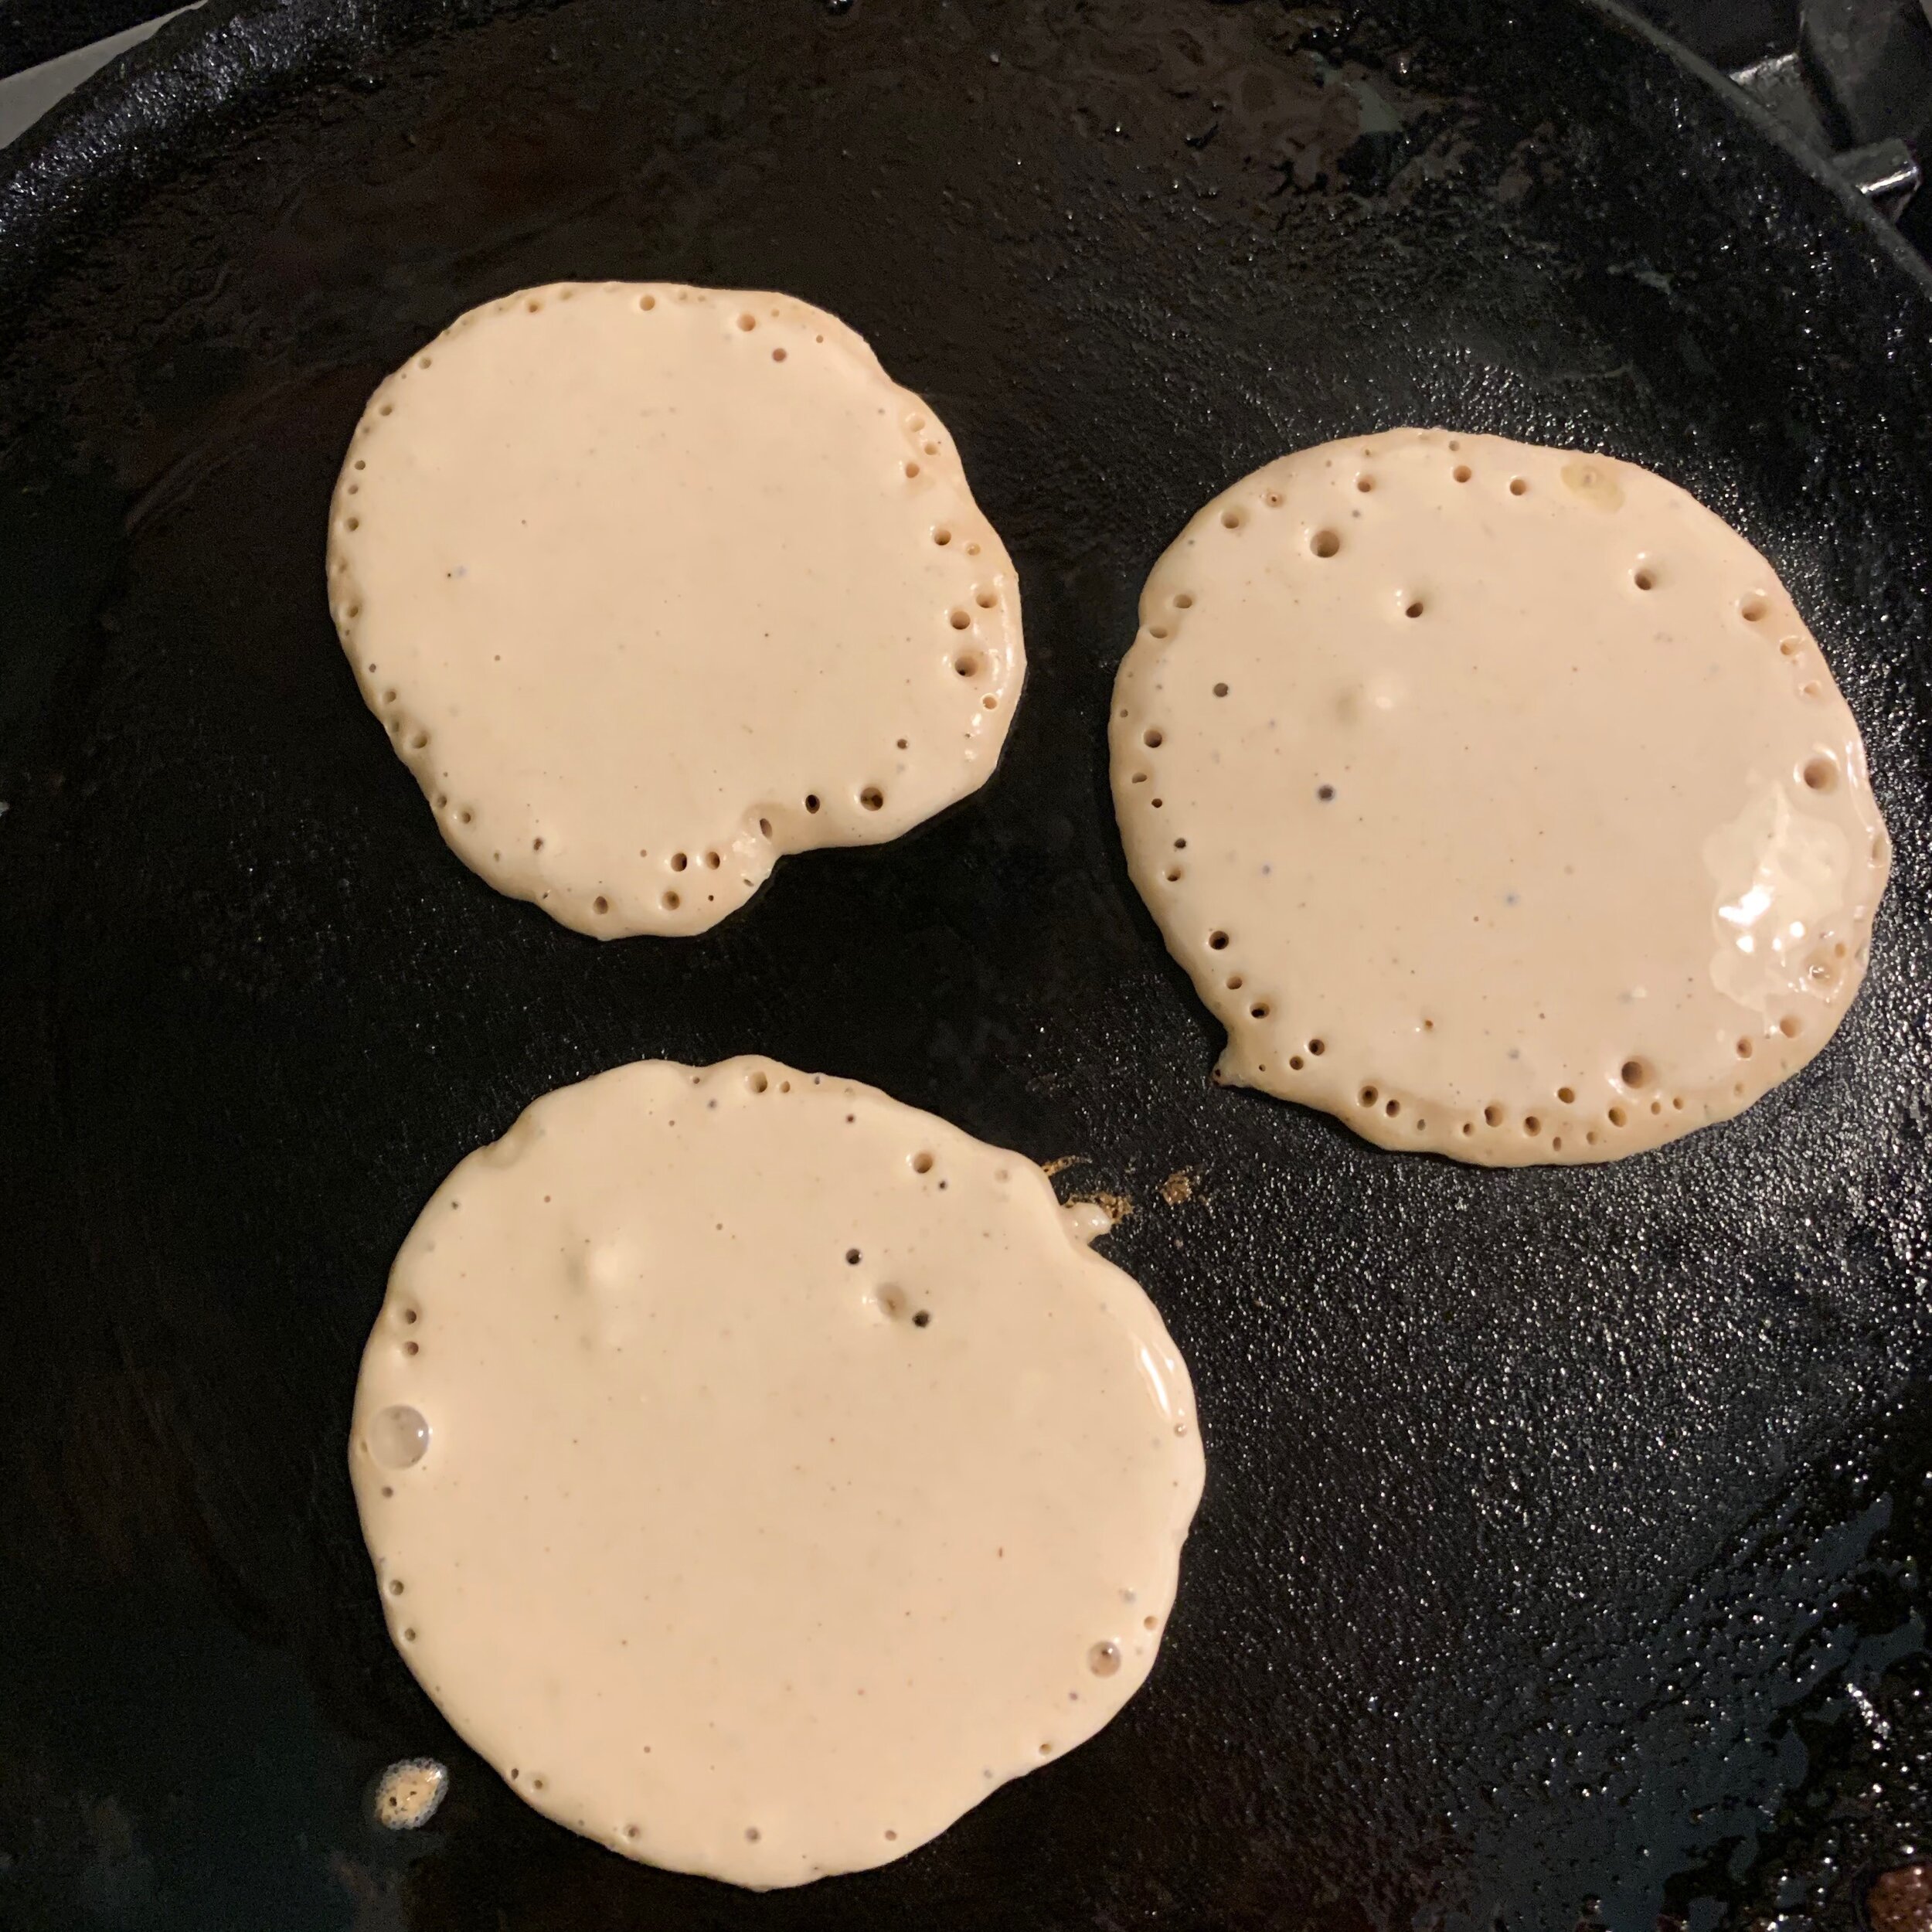 I pour the pancakes 2-3" round